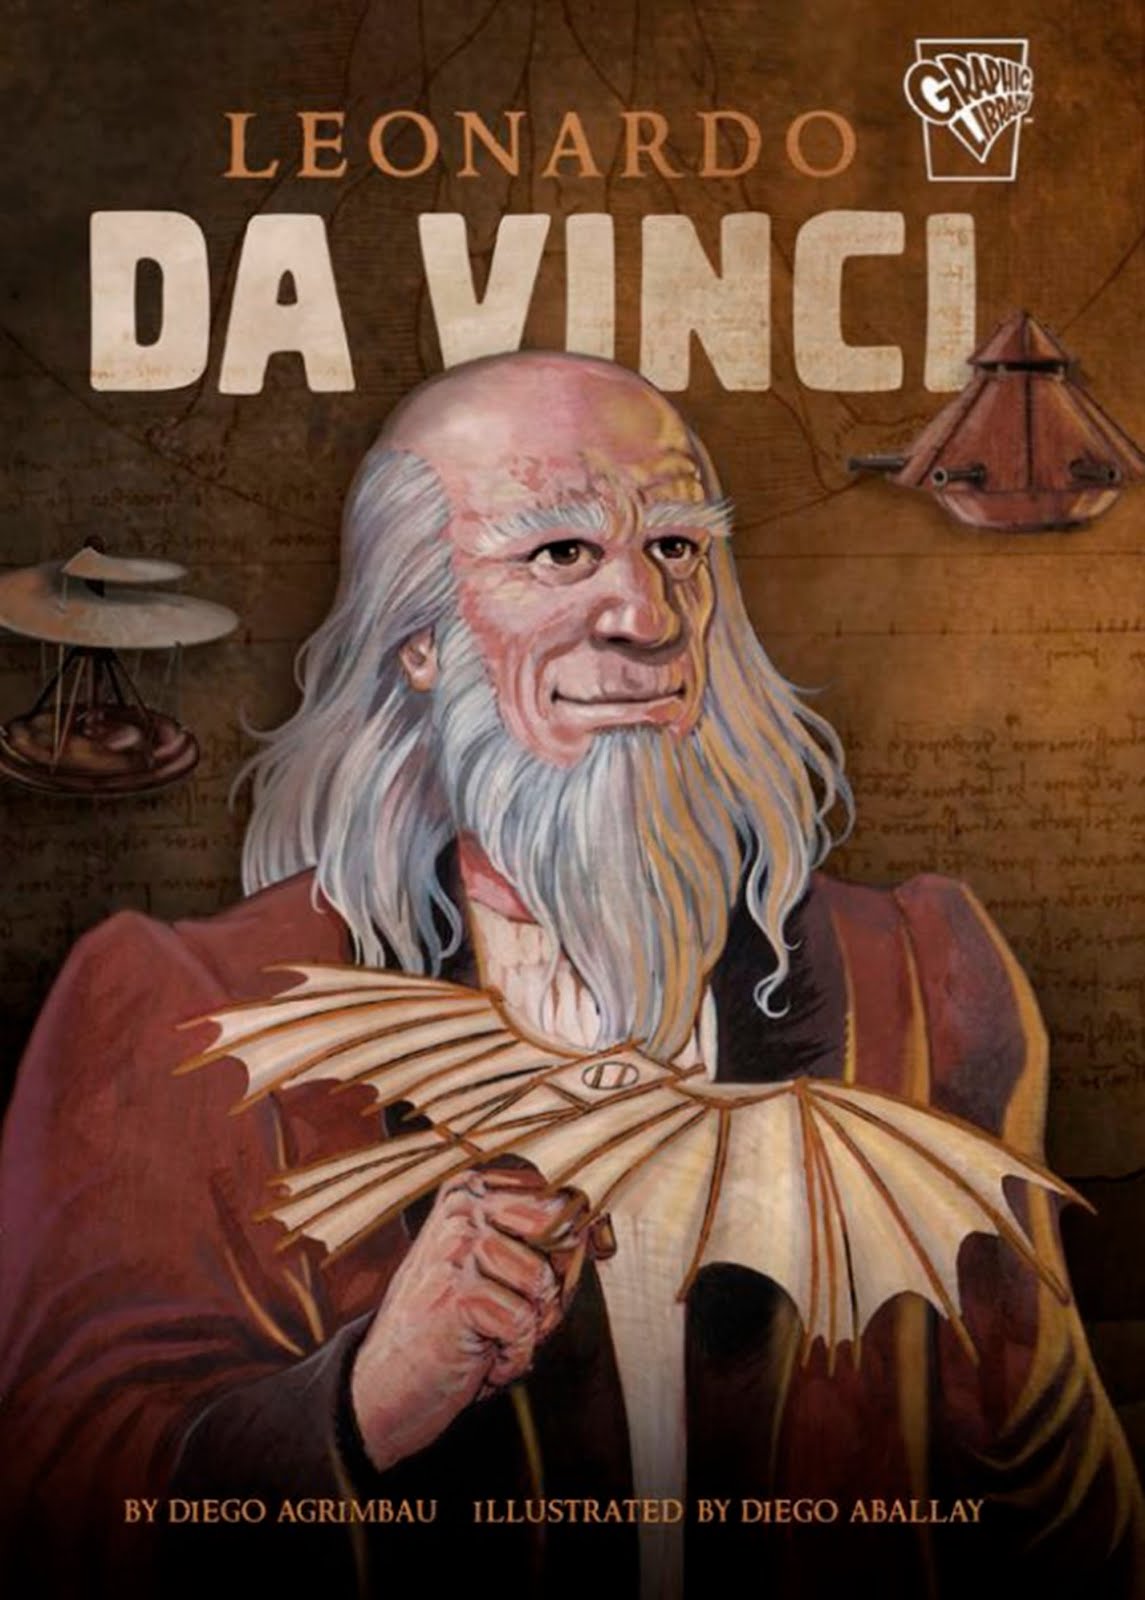 Leonardo Da Vinci (Biografía) Capstone EEUU